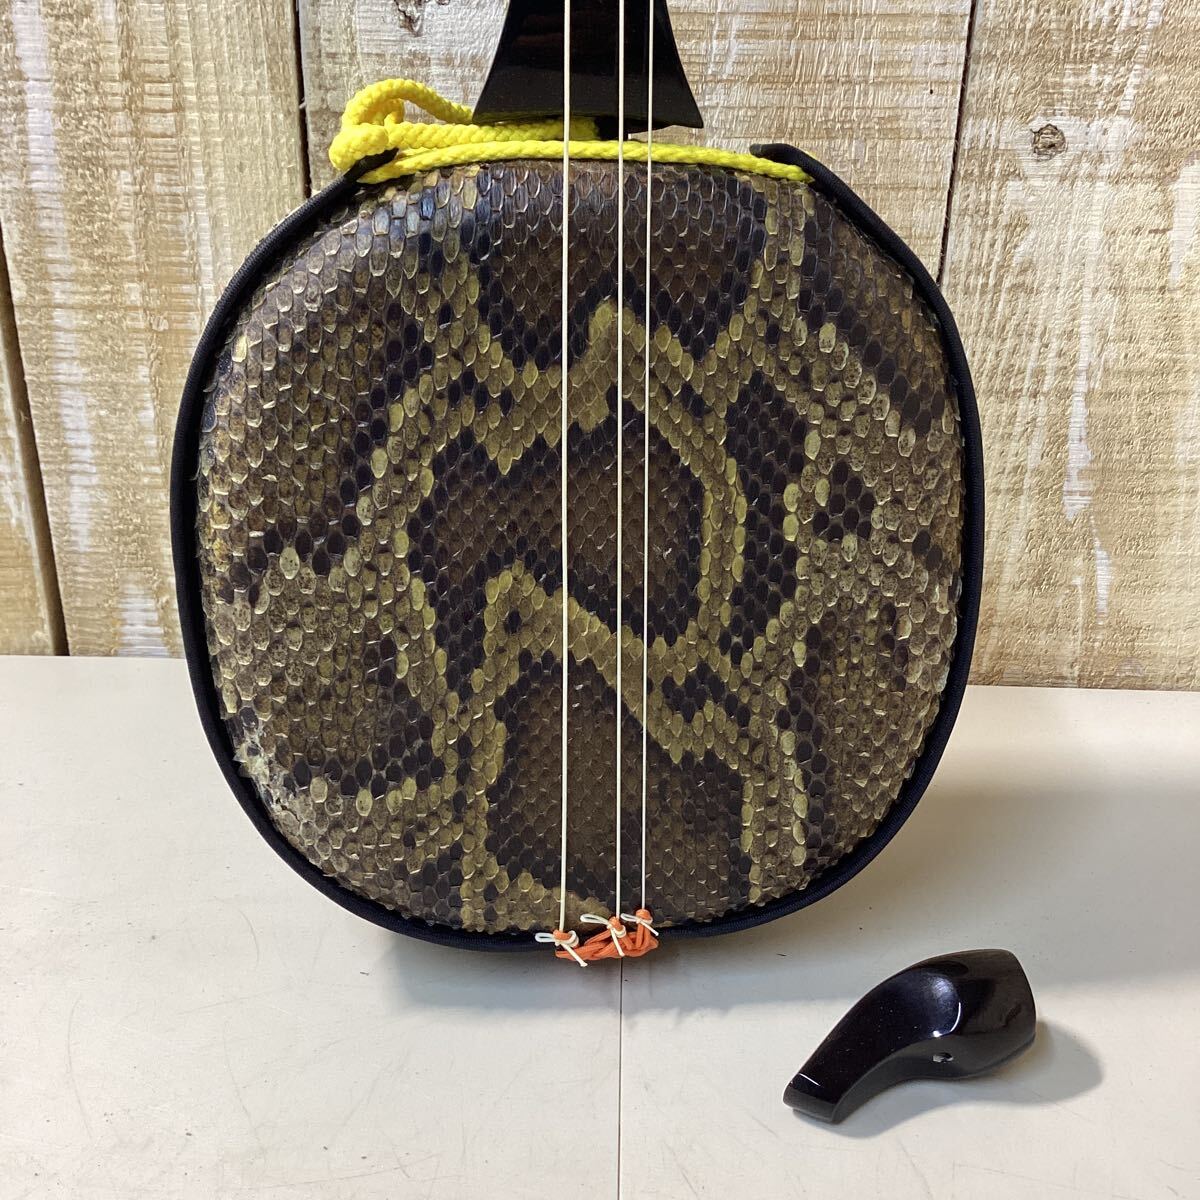  sanshin жесткий чехол есть палочки ввод струнные инструменты традиционные японские музыкальные инструменты изделие прикладного искусства Okinawa традиция прикладное искусство 